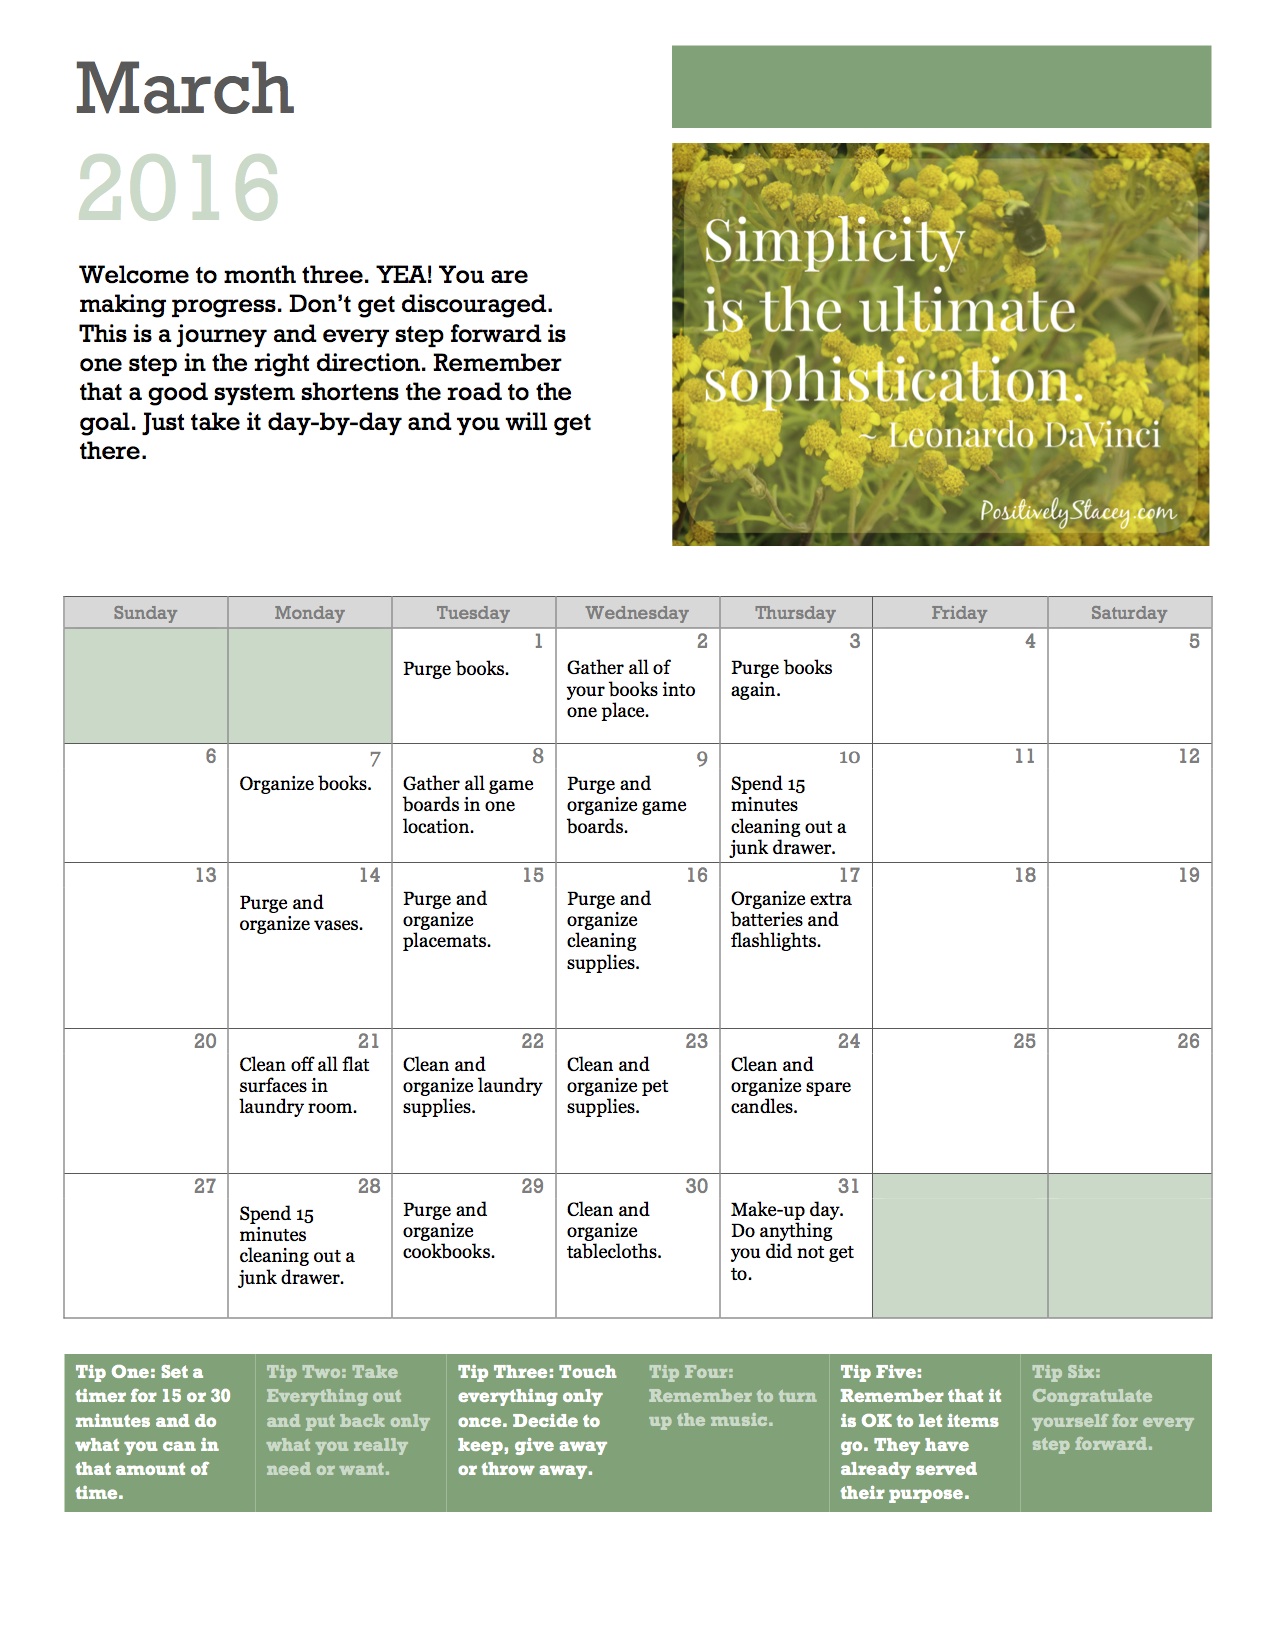 Getting Organized! Home Organization Plan March Calendar